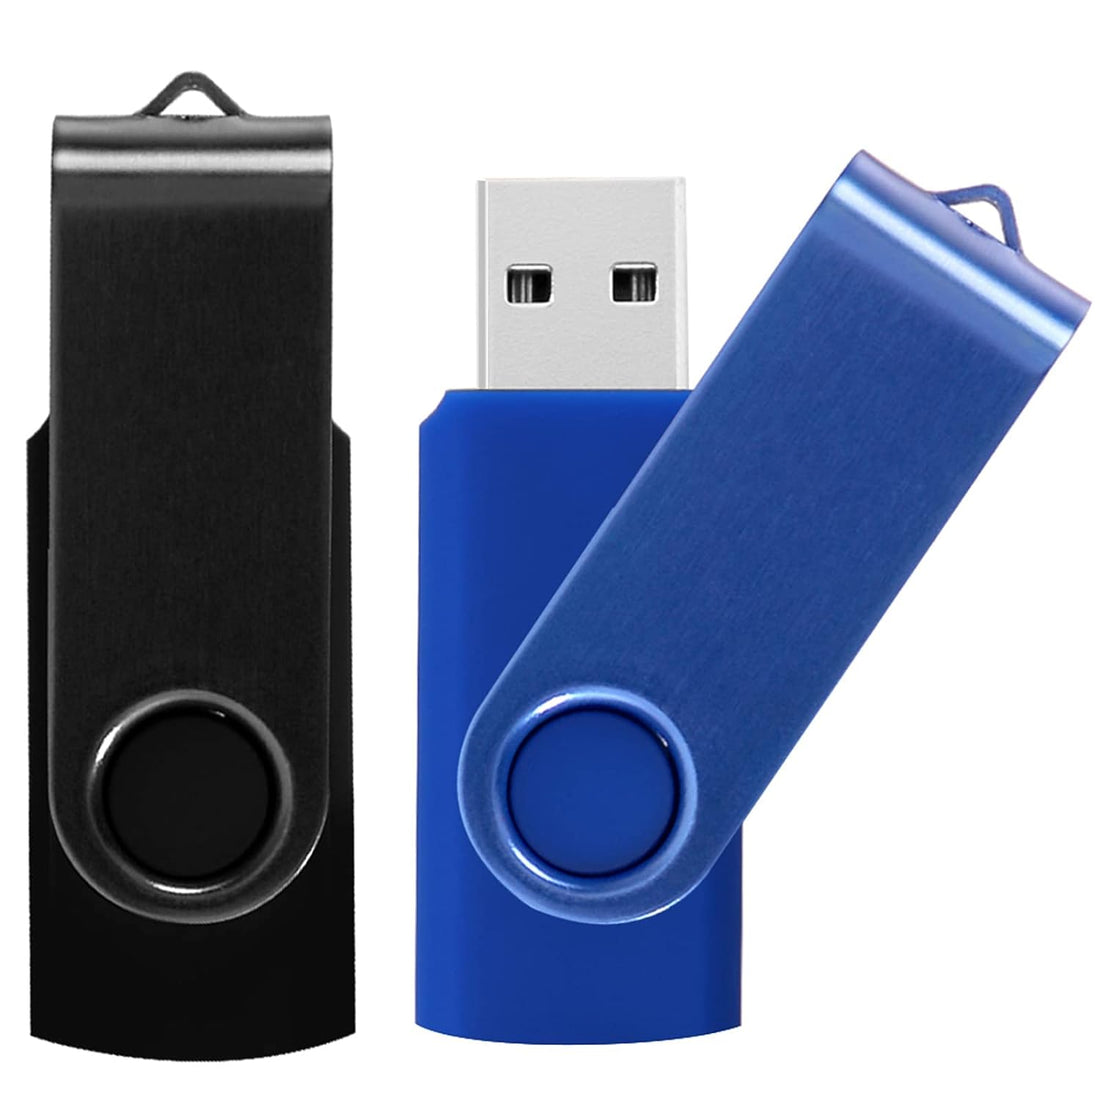 KAISLE 64GB USB Flash Drives 2 Pack USB 2.0 Thumb Drive Pen Drive Swivel Memory Sticks (2 Colors: Black Blue)